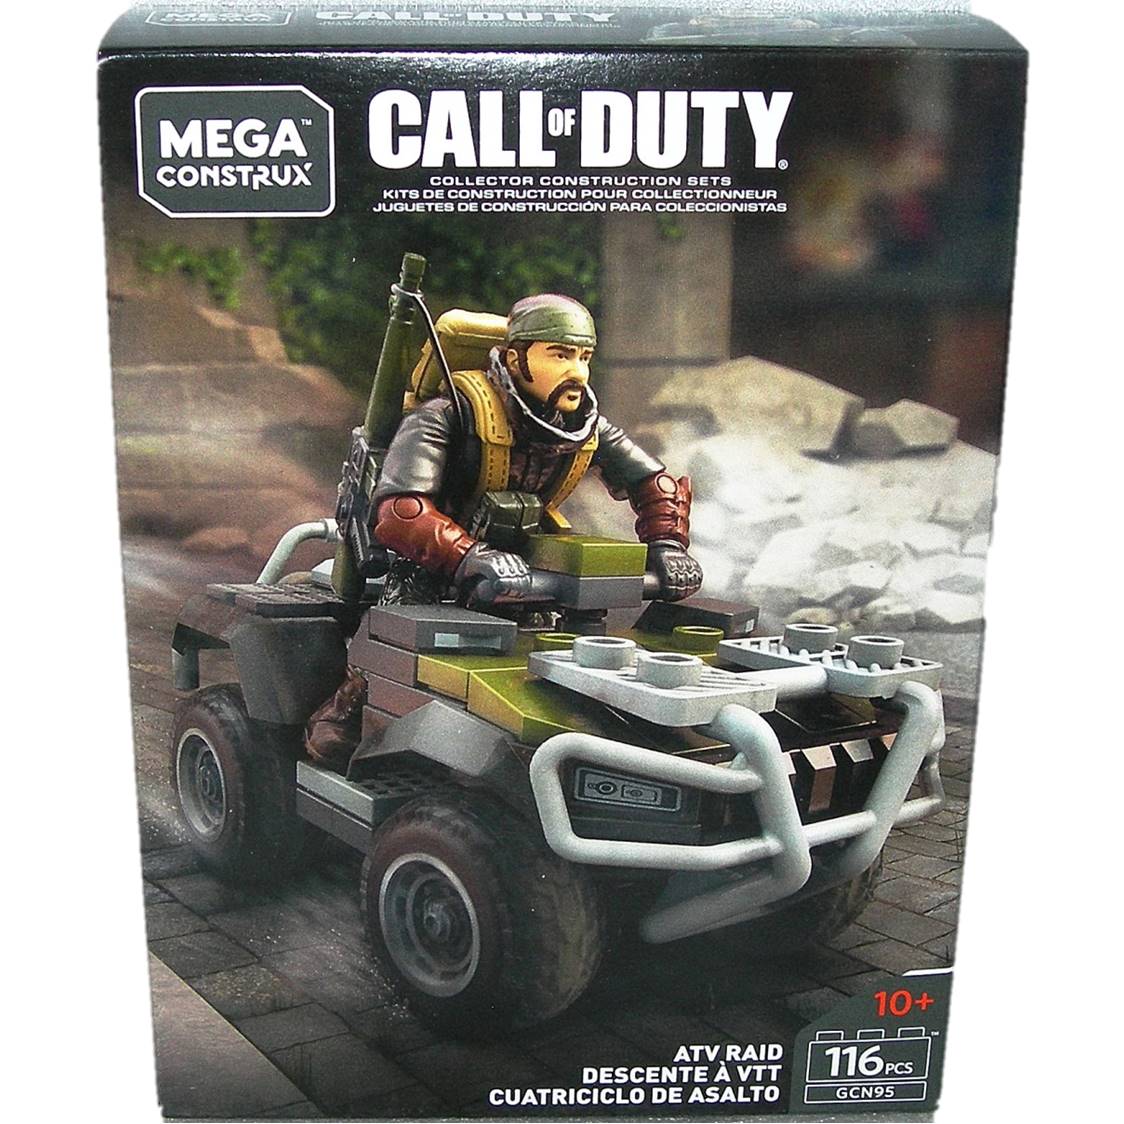 Call of Duty Mega Construx ATV Raid 116 Pcs Ages 10+ 